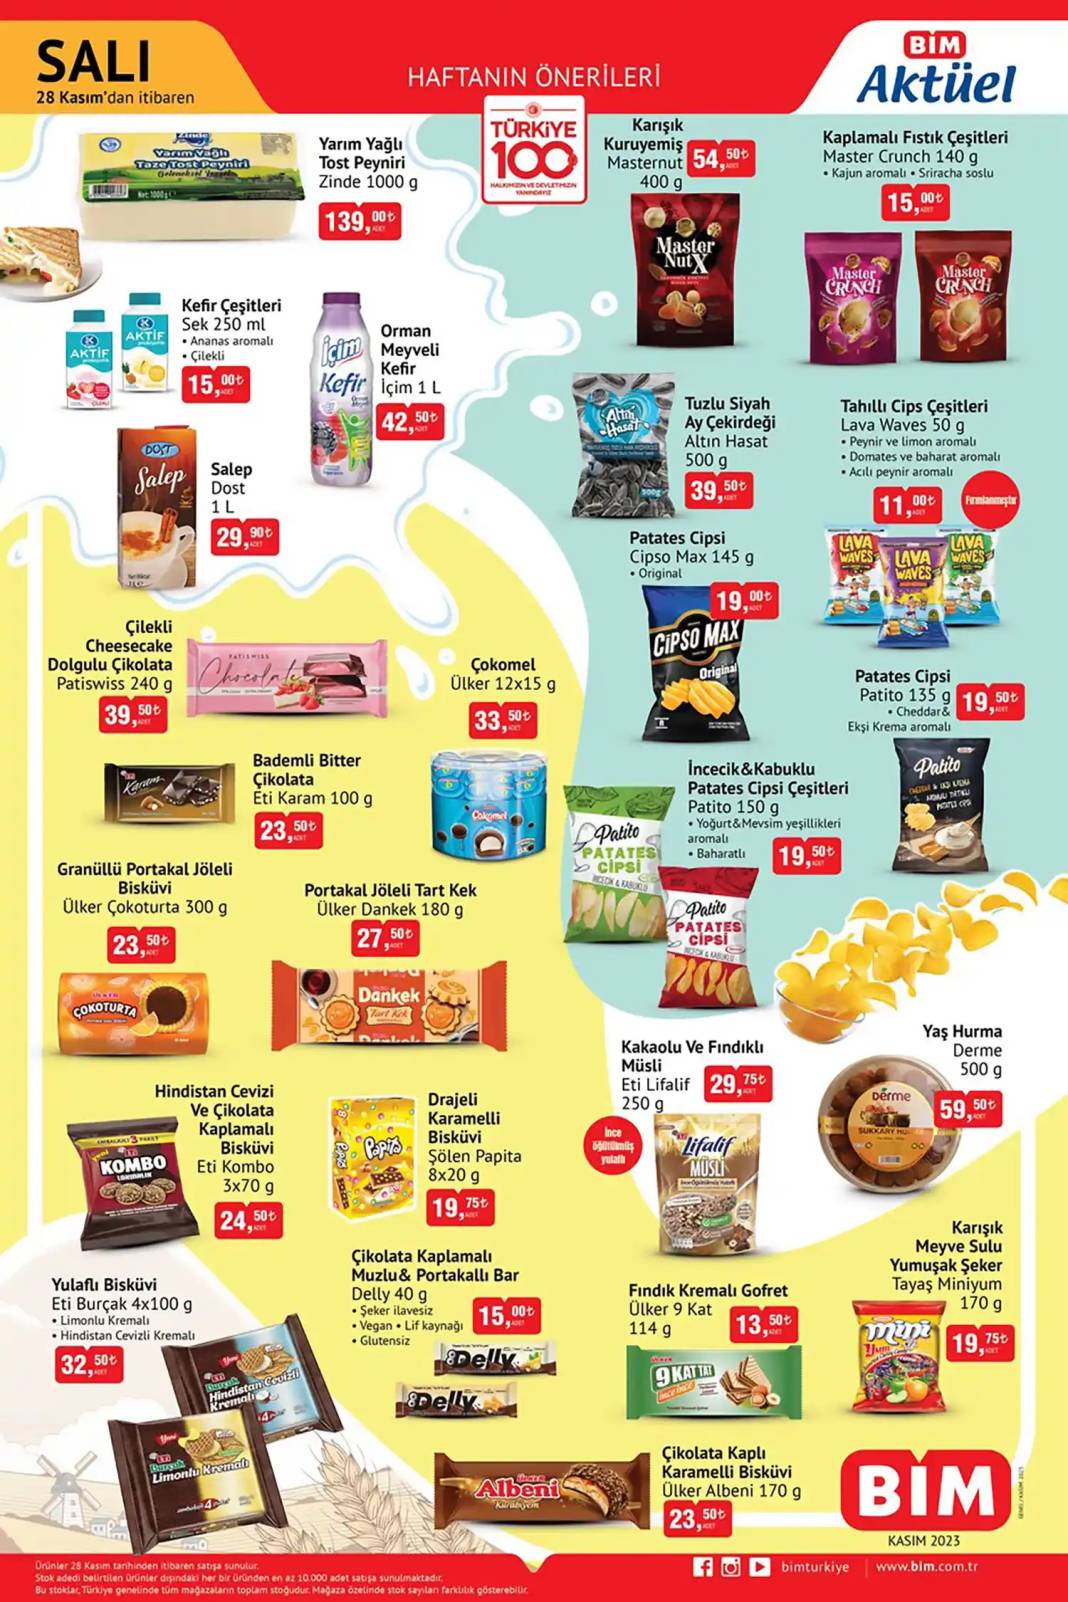 BİM'de Makarna sadece 9 TL'ye Satılıyor! Kekik, Pul Biber, Sarımsak Tozu ve Bitki Çayı Fiyatları düştü! 3